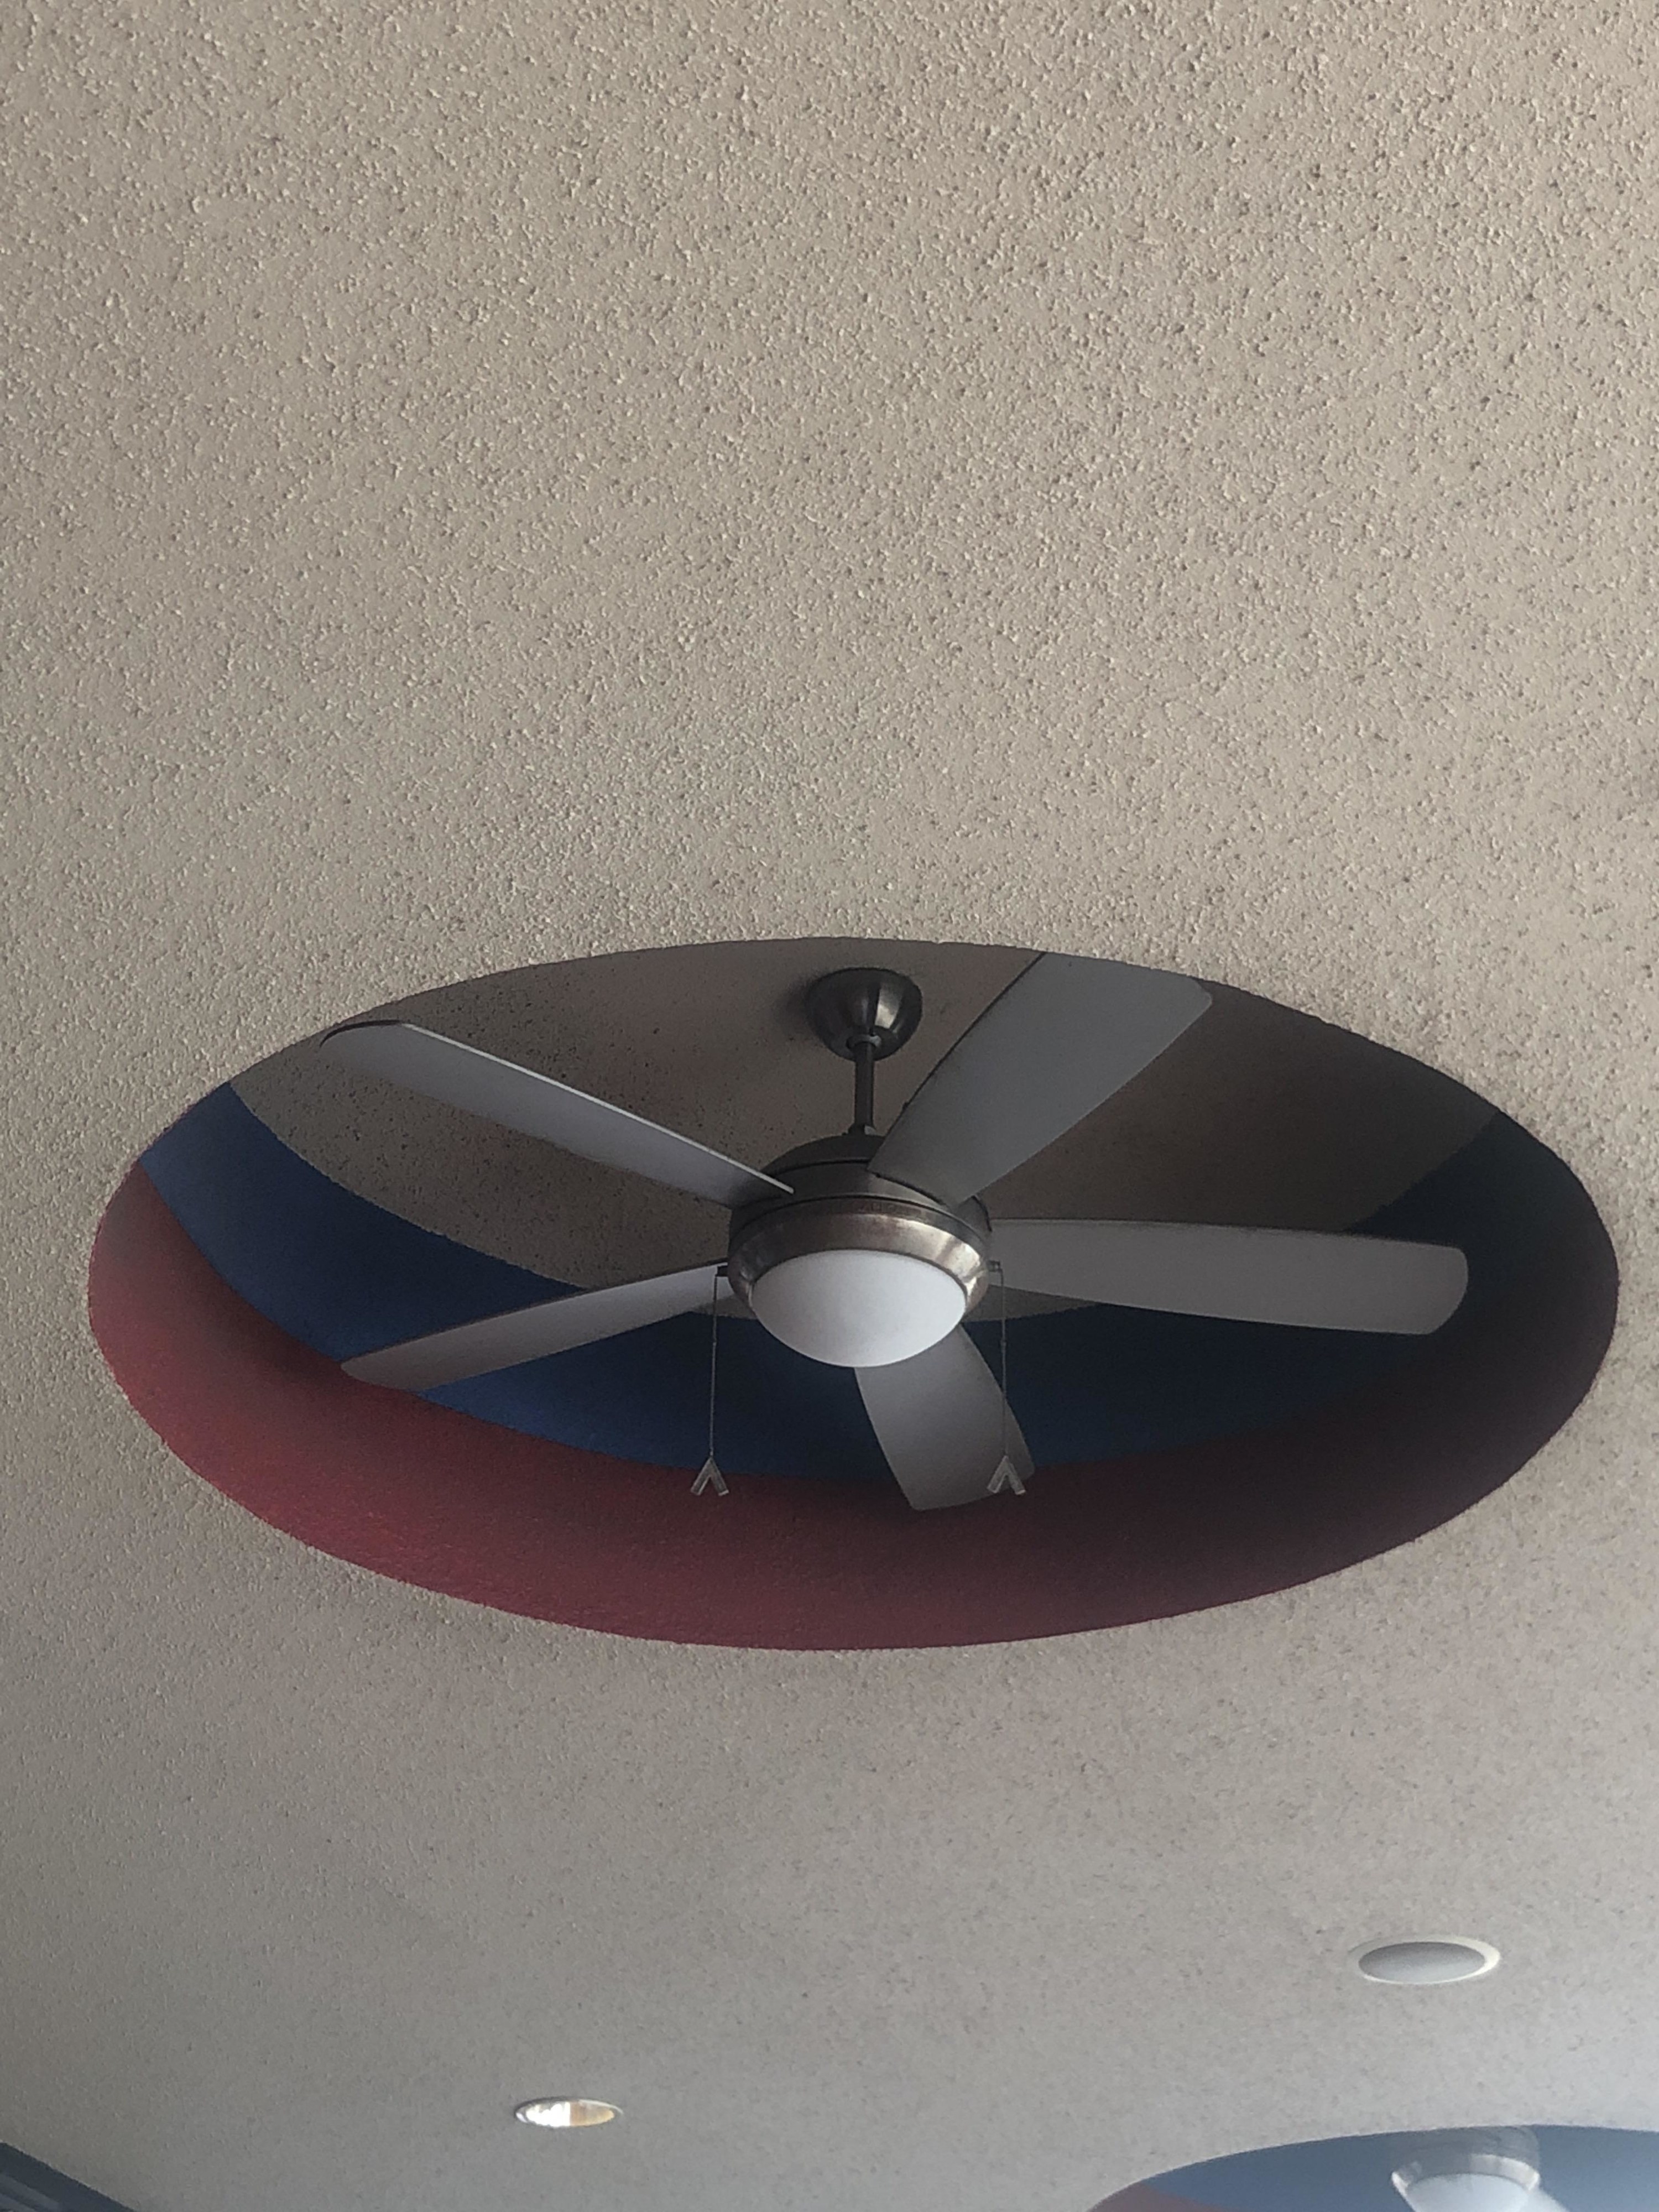 enclosed fan in ceiling